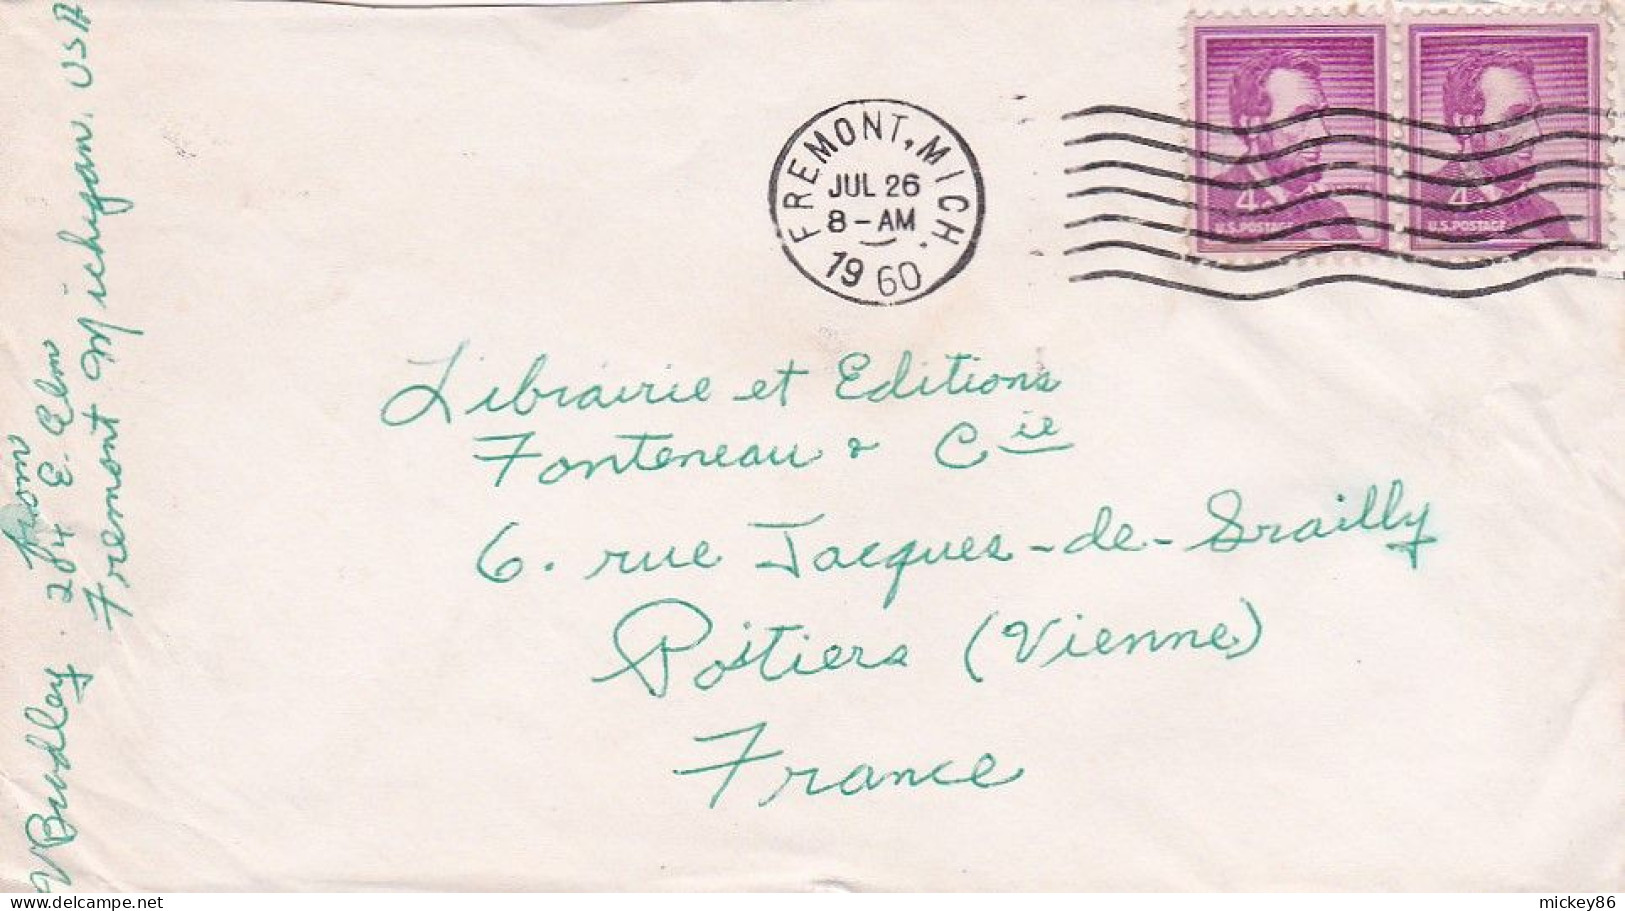 Etats-Unis--1960--Lettre De TREMONT. Mich  Pour POITIERS (France)..timbres + Cachet Mécanique Muet - Lettres & Documents